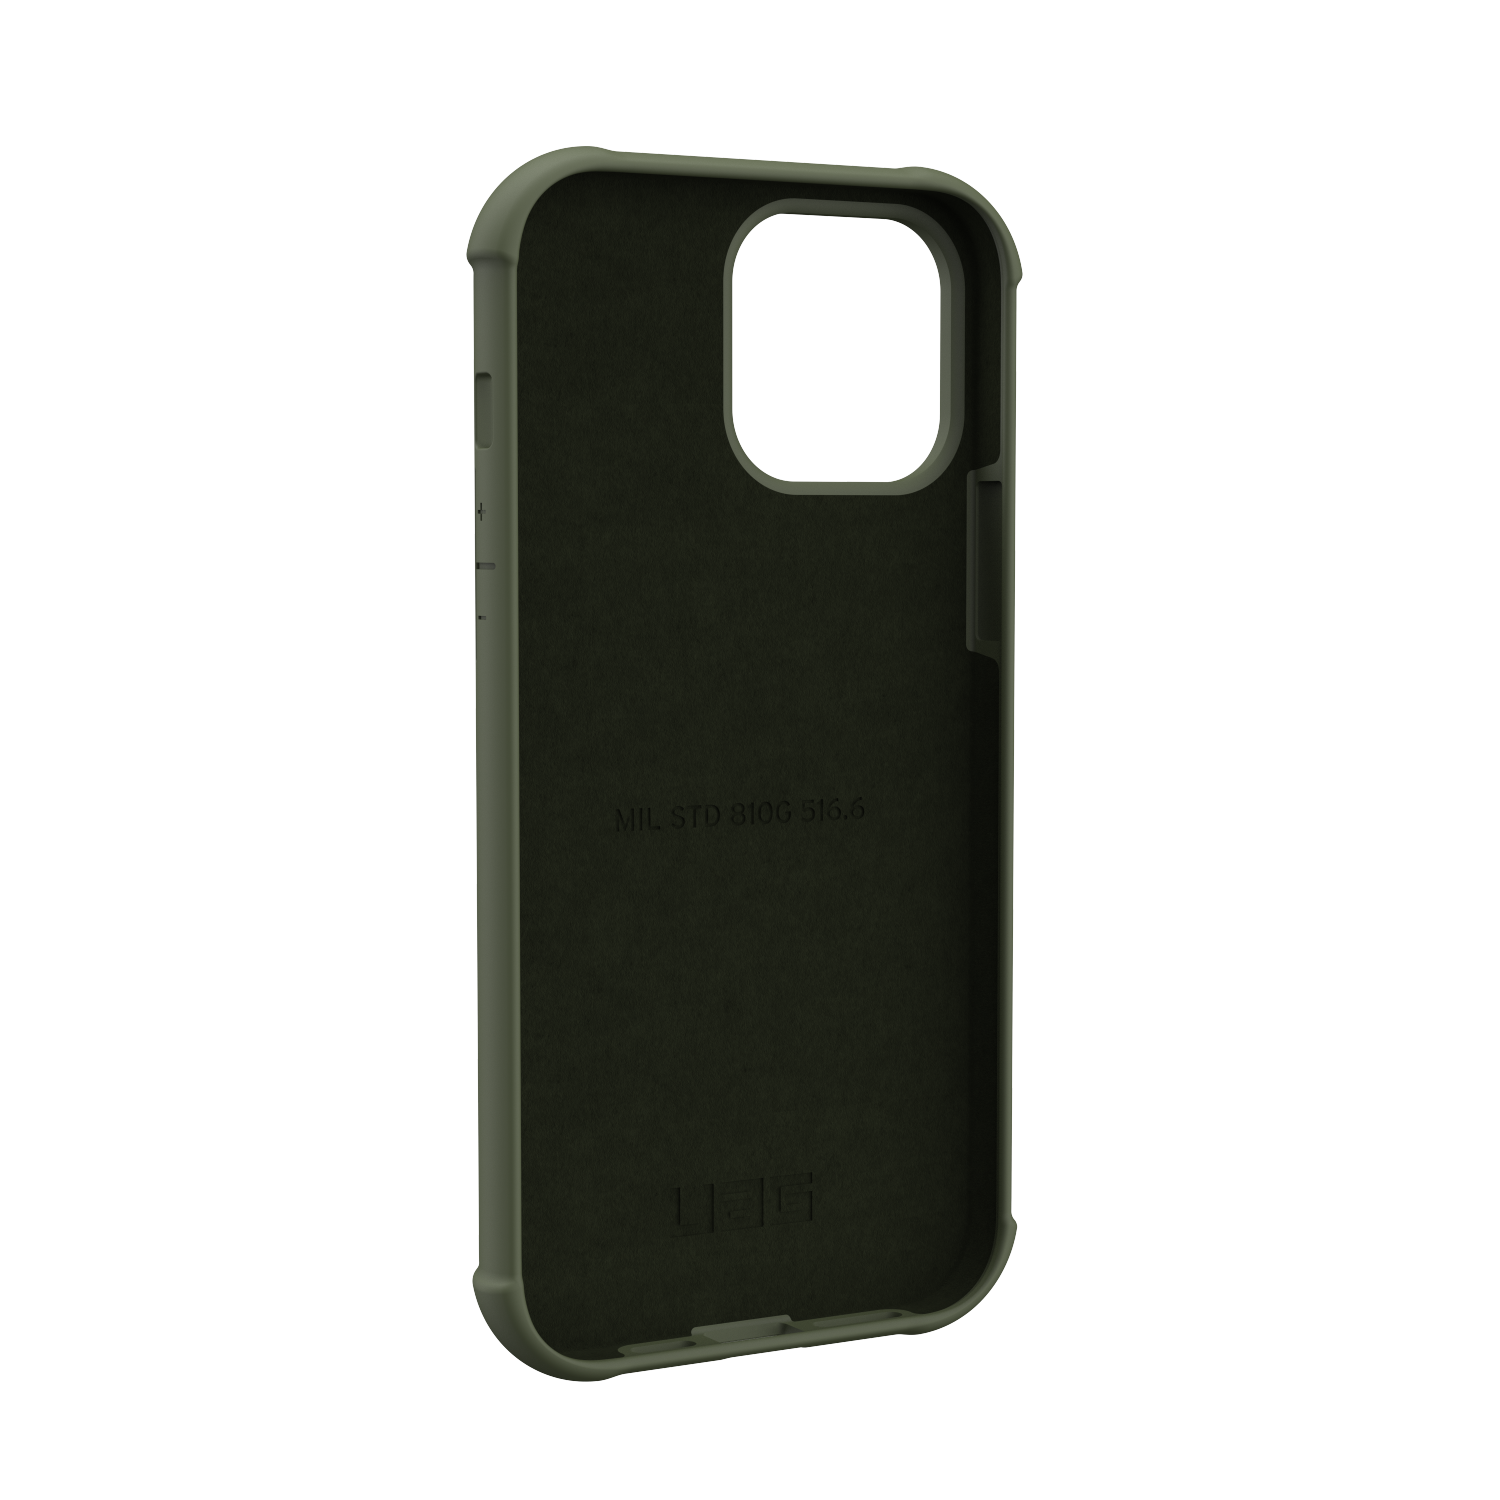 Ốp lưng UAG Standard Issue cho iPhone 13 Pro Max [6.7 inch] - hàng chính hãng